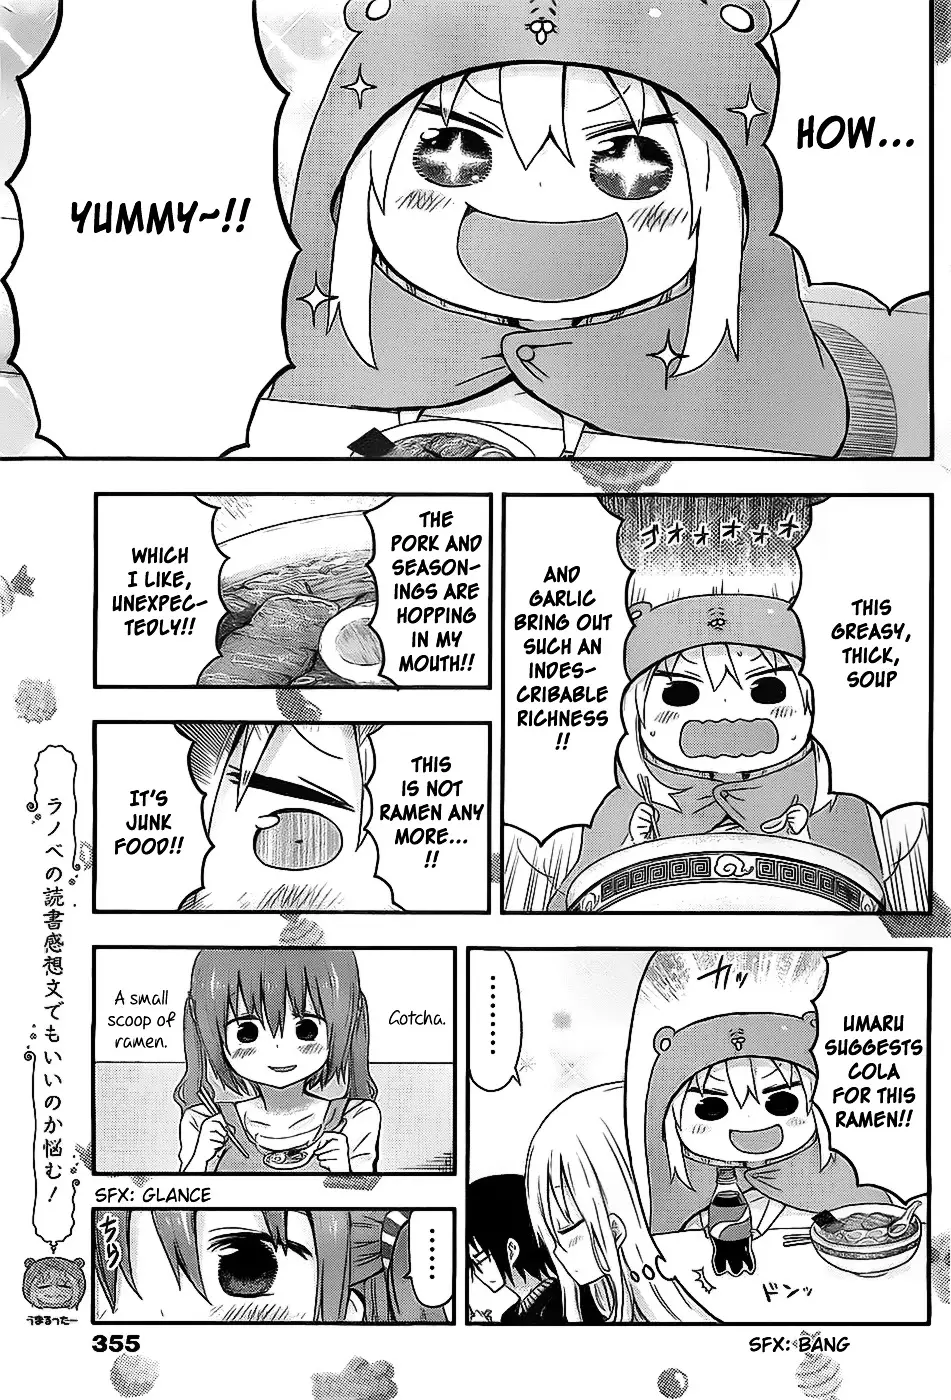 Himouto! Umaru-Chan - 24 page 5